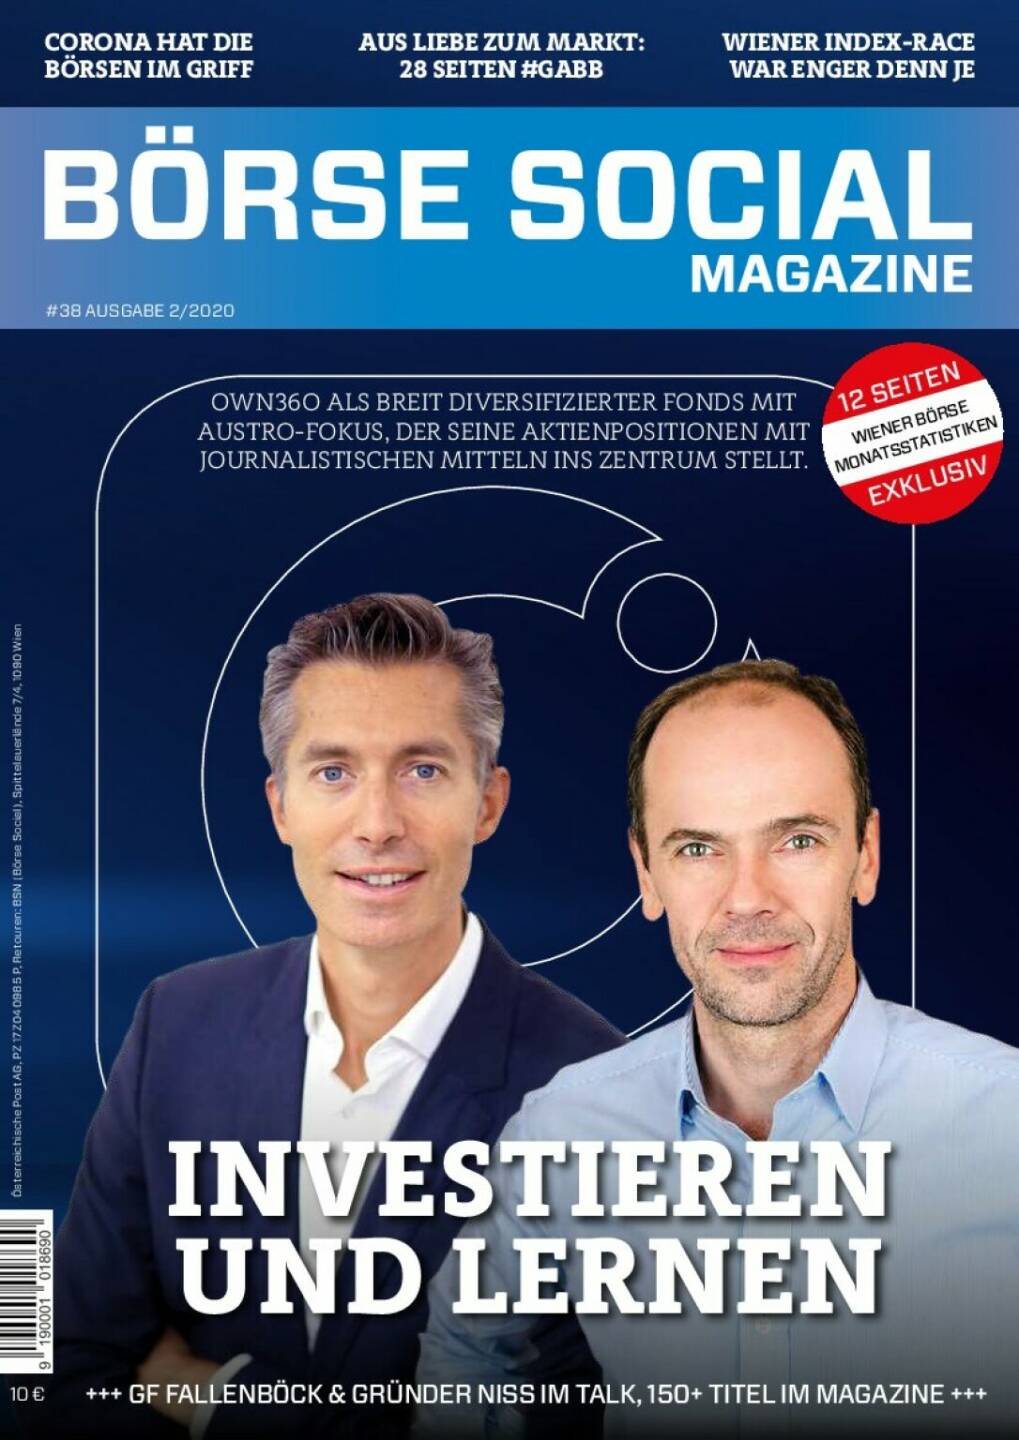 Magazine #38 - Februar 2020: Markus Fallenböck und Thomas Niss über den Change von Own Austria zu Own360